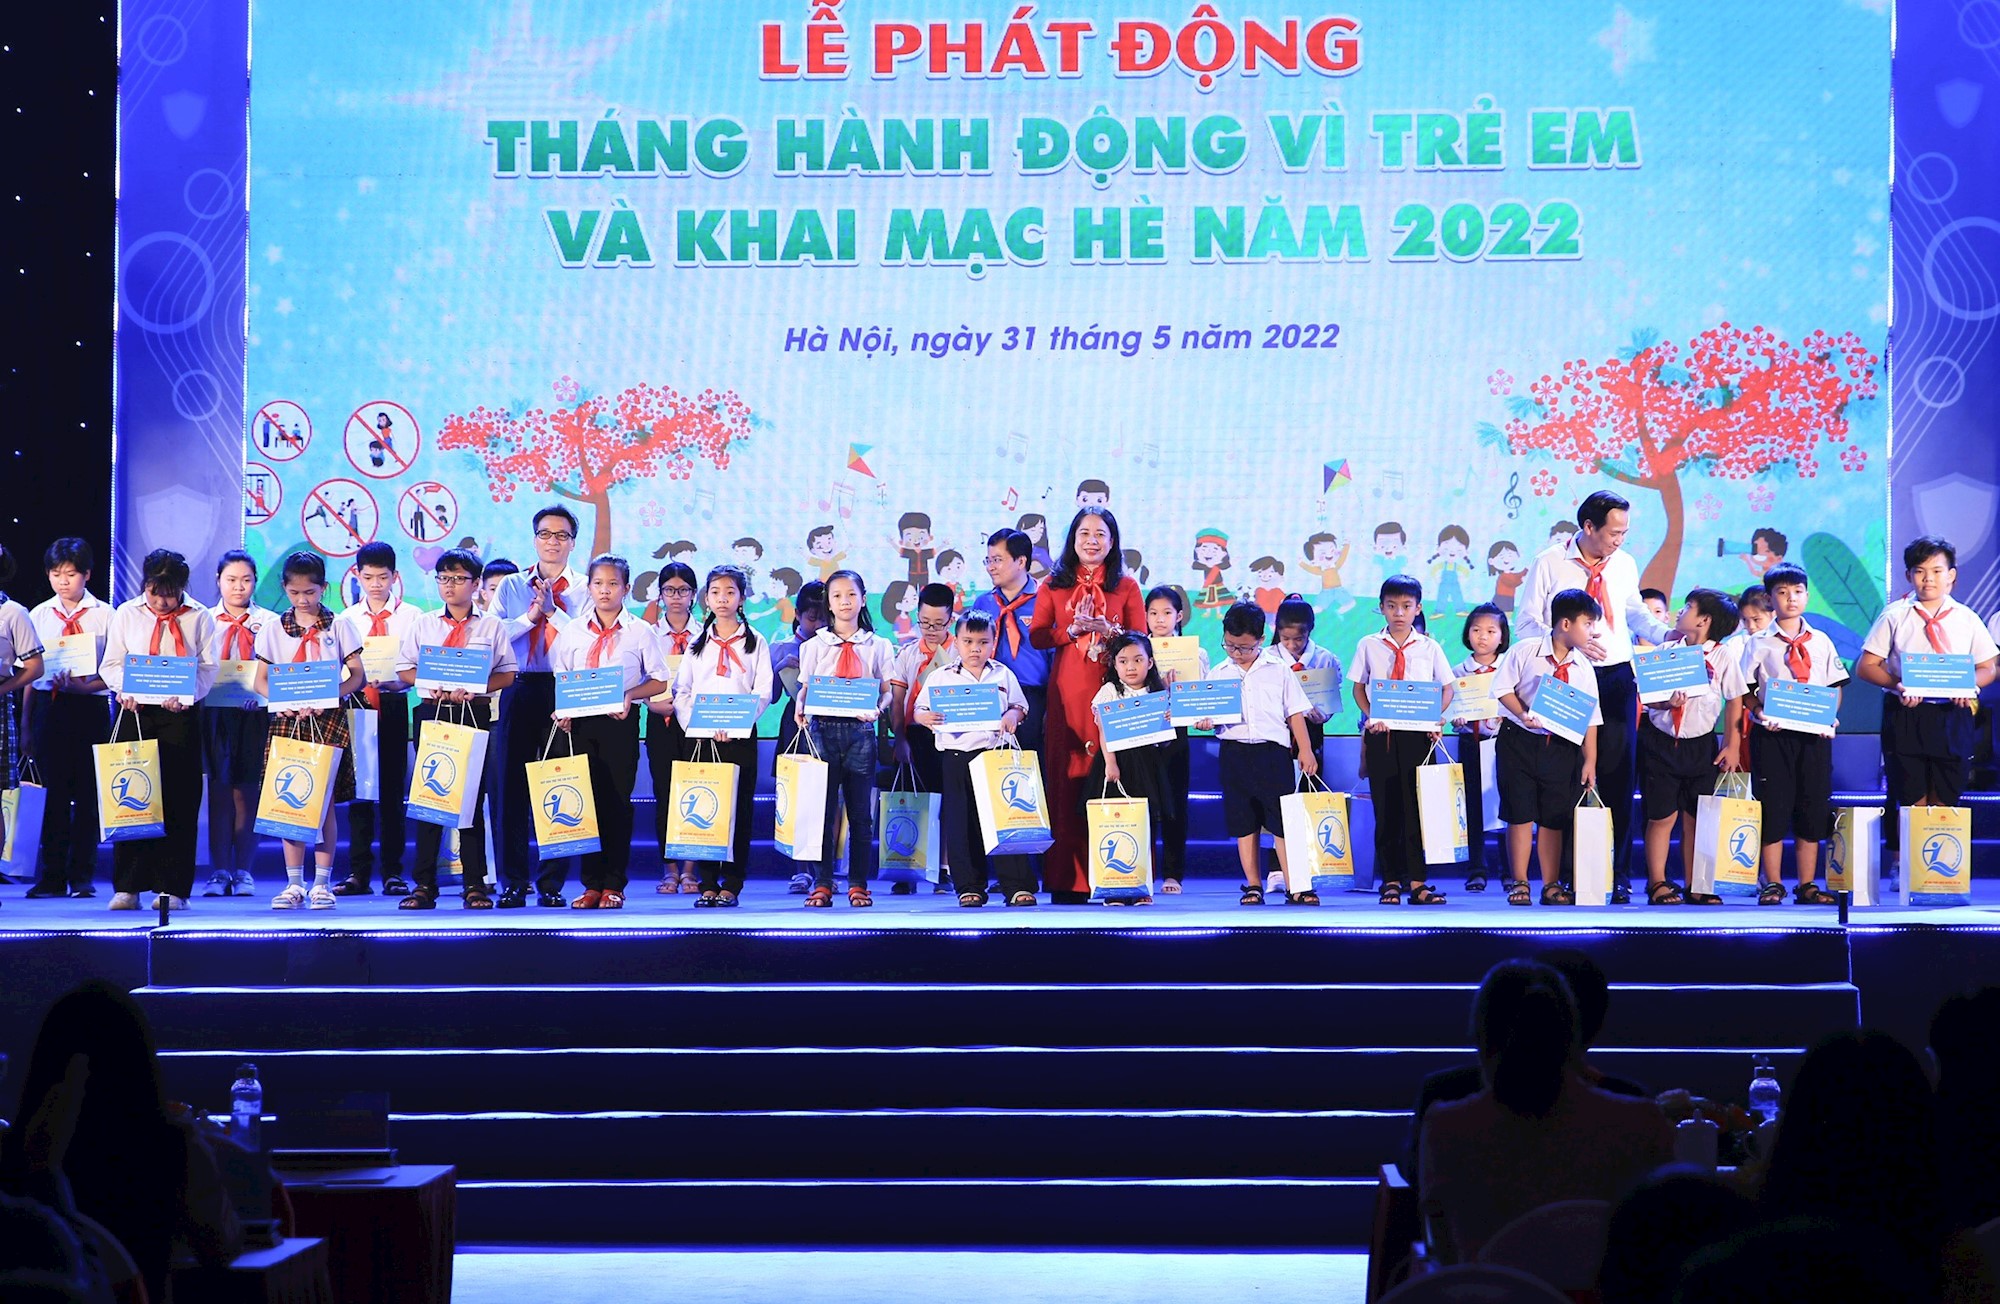 Thủ tướng Phạm Minh Chính dự Lễ phát động Tháng hành động vì trẻ em và khai mạc hè năm 2022 - Ảnh 8.